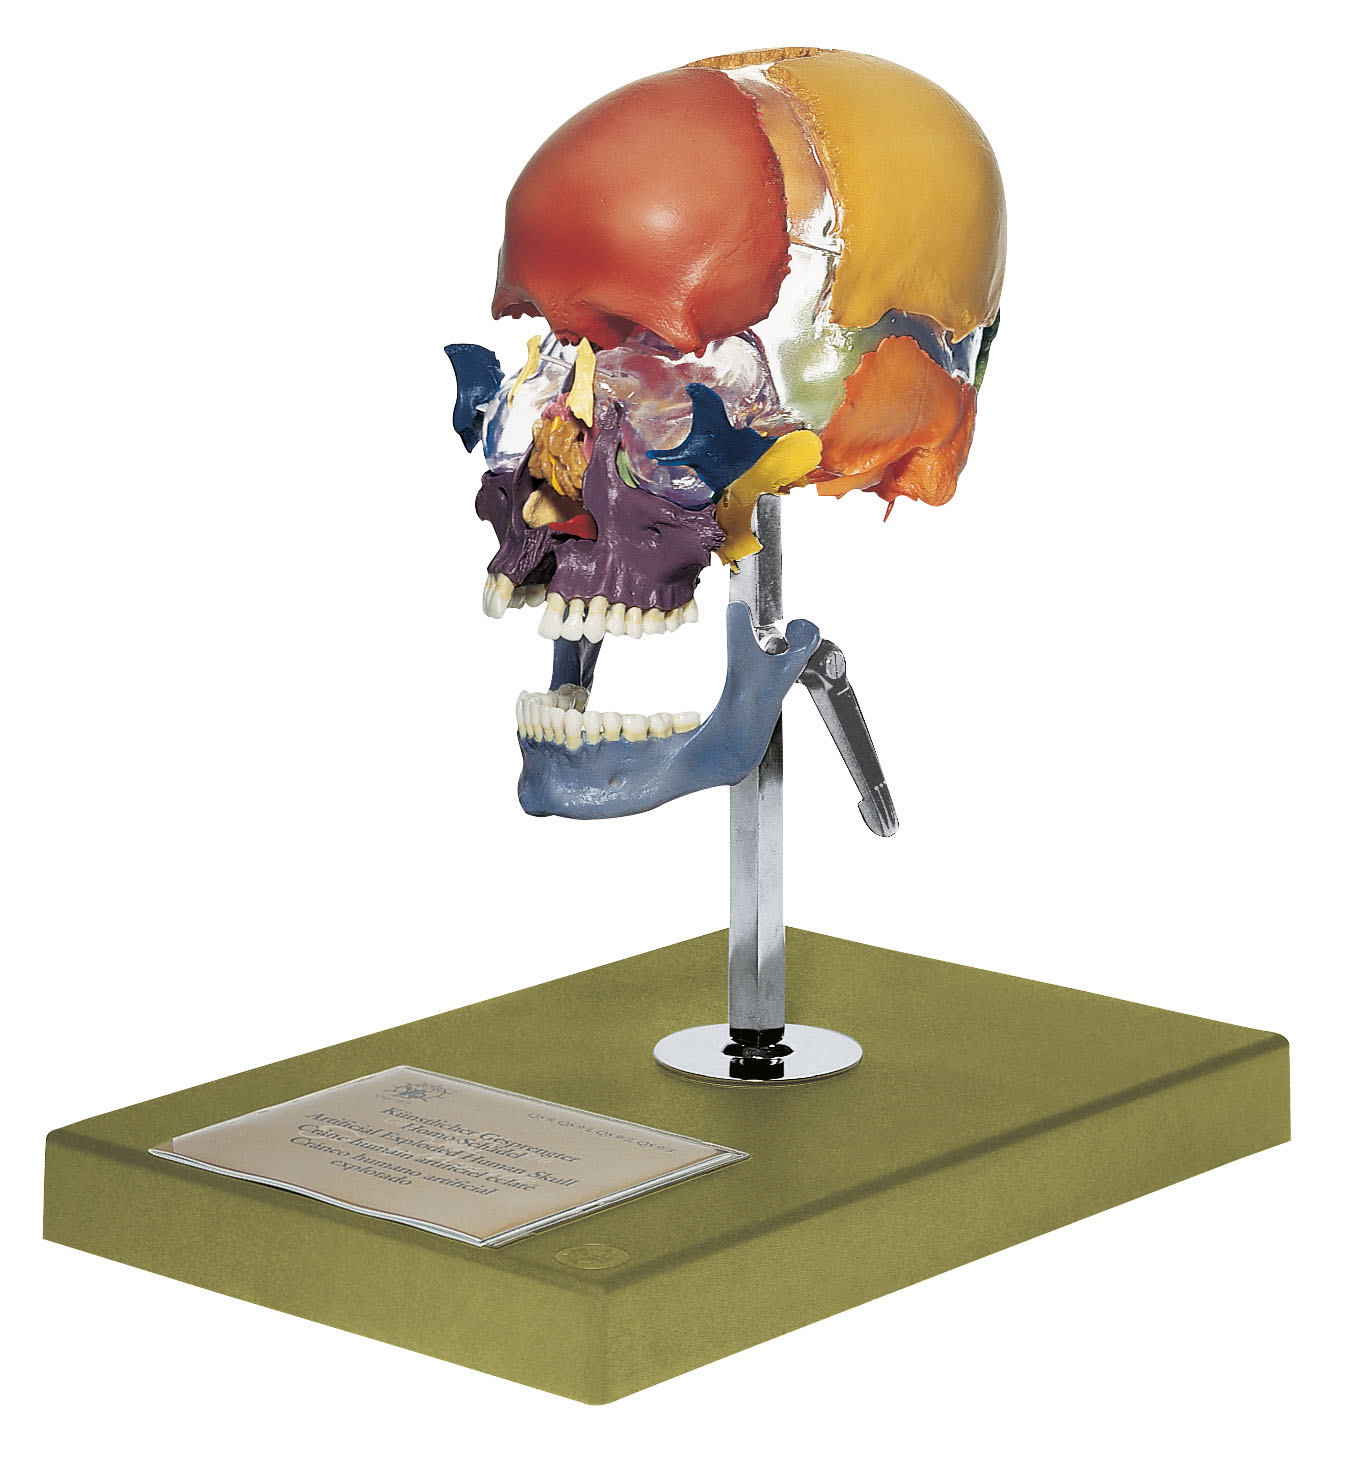 Artificial Bauchene Skull of an Adult